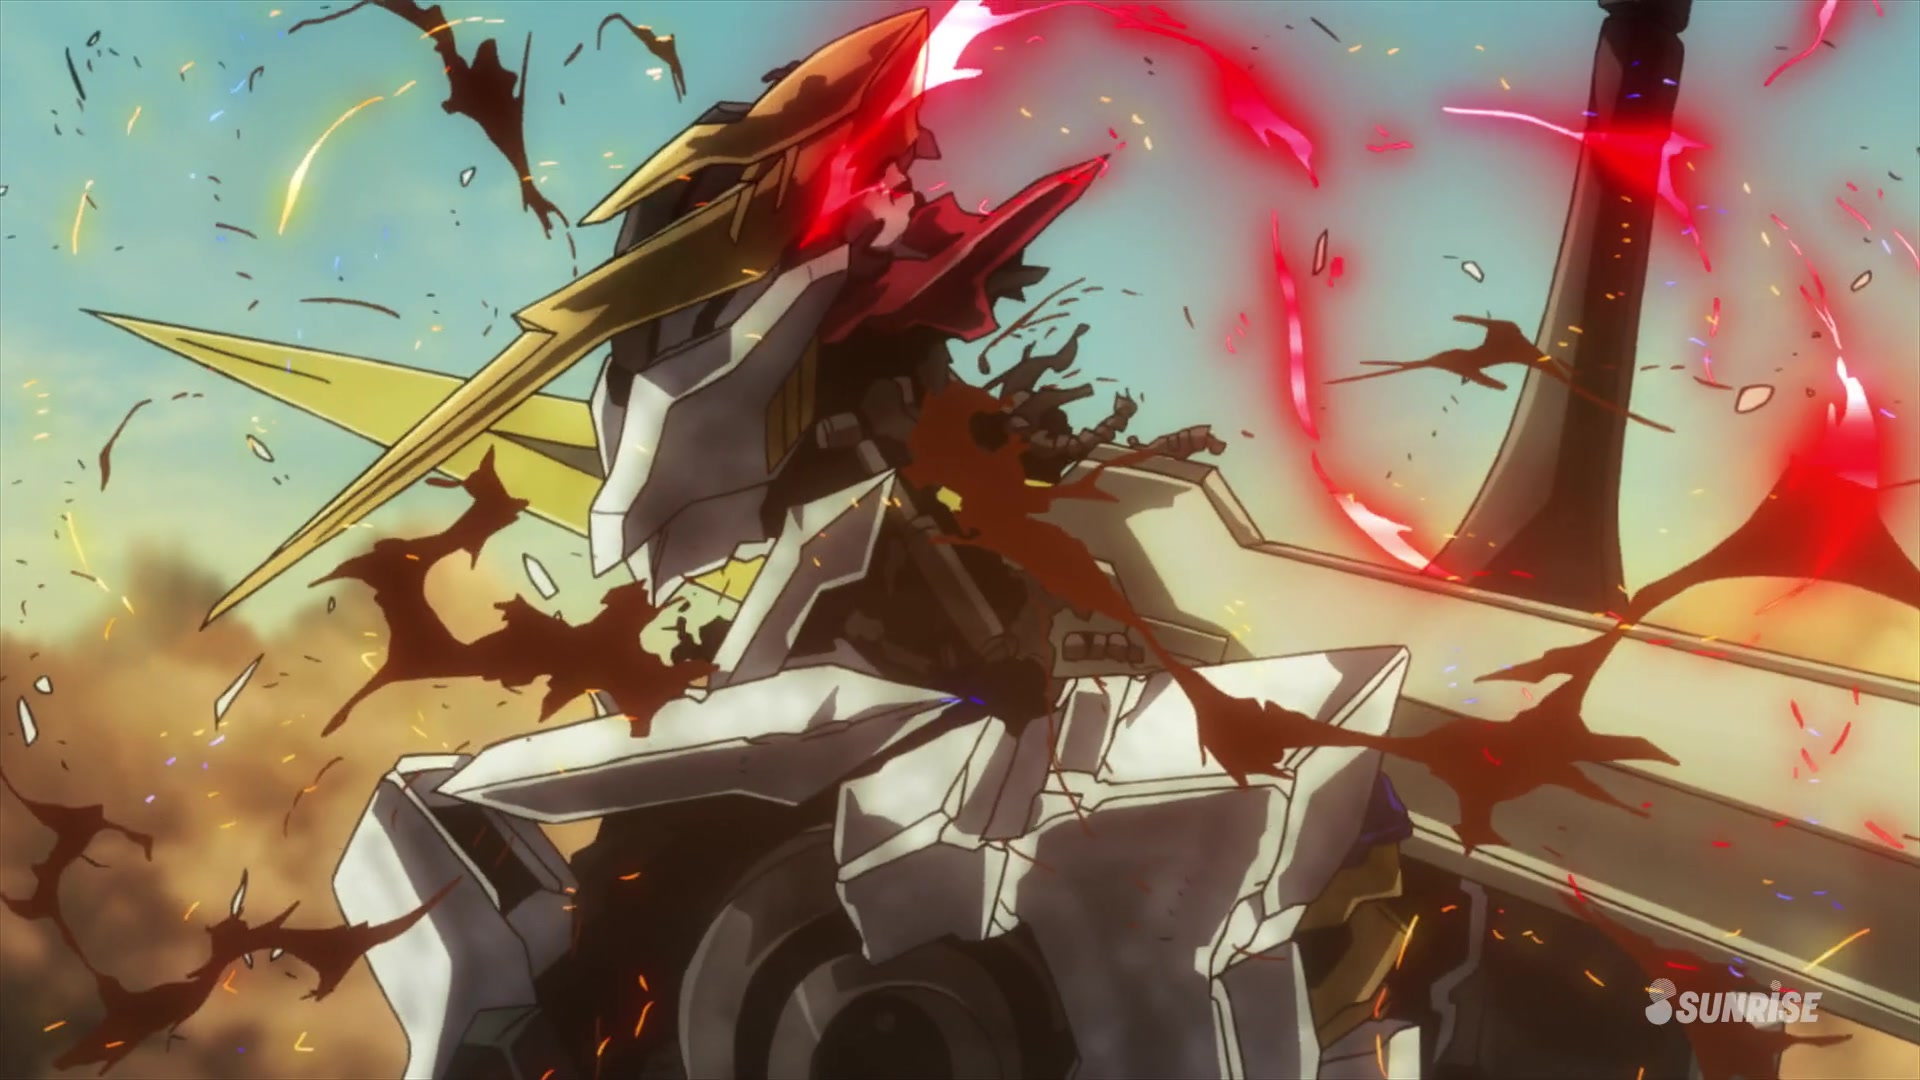 Манга месть железной кровной гончей меча 73. ГАНДАМ Железнокровные сироты. Gundam Barbatos Lupus Rex. Gundam Iron blooded Orphans.